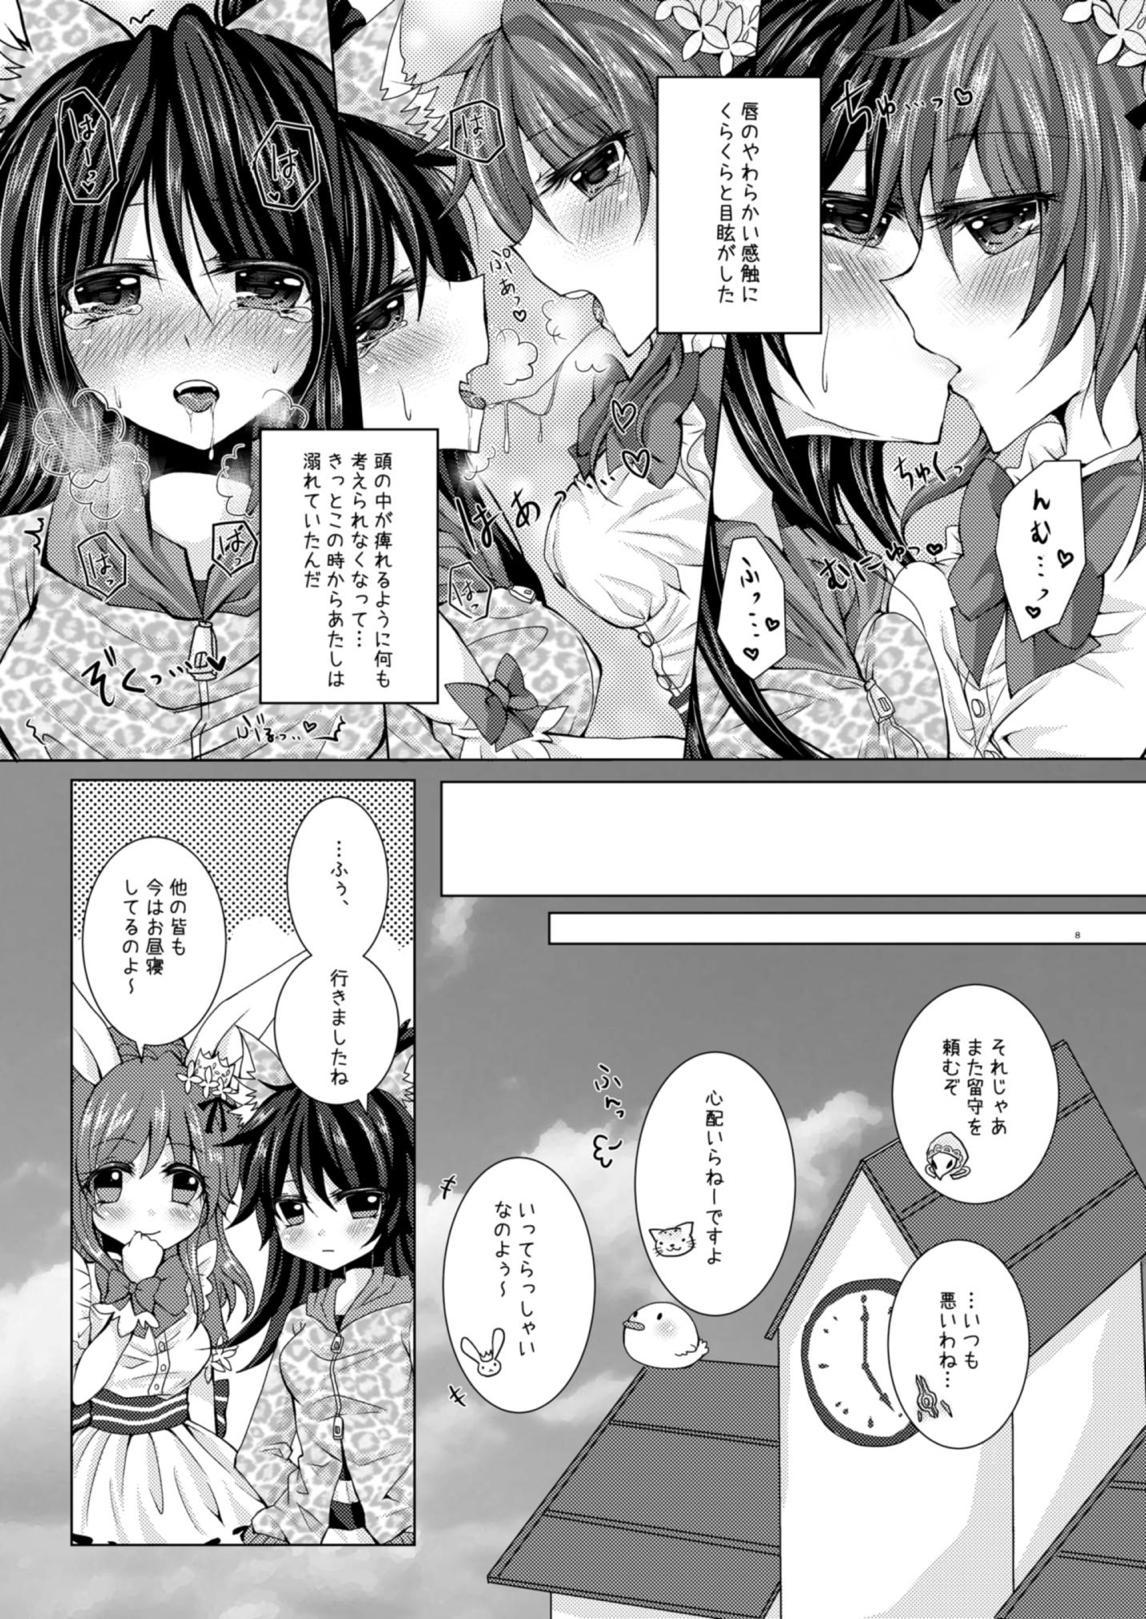 Classy Girls' Talk wa Amakunai - Emil chronicle online Kitchen - Page 7